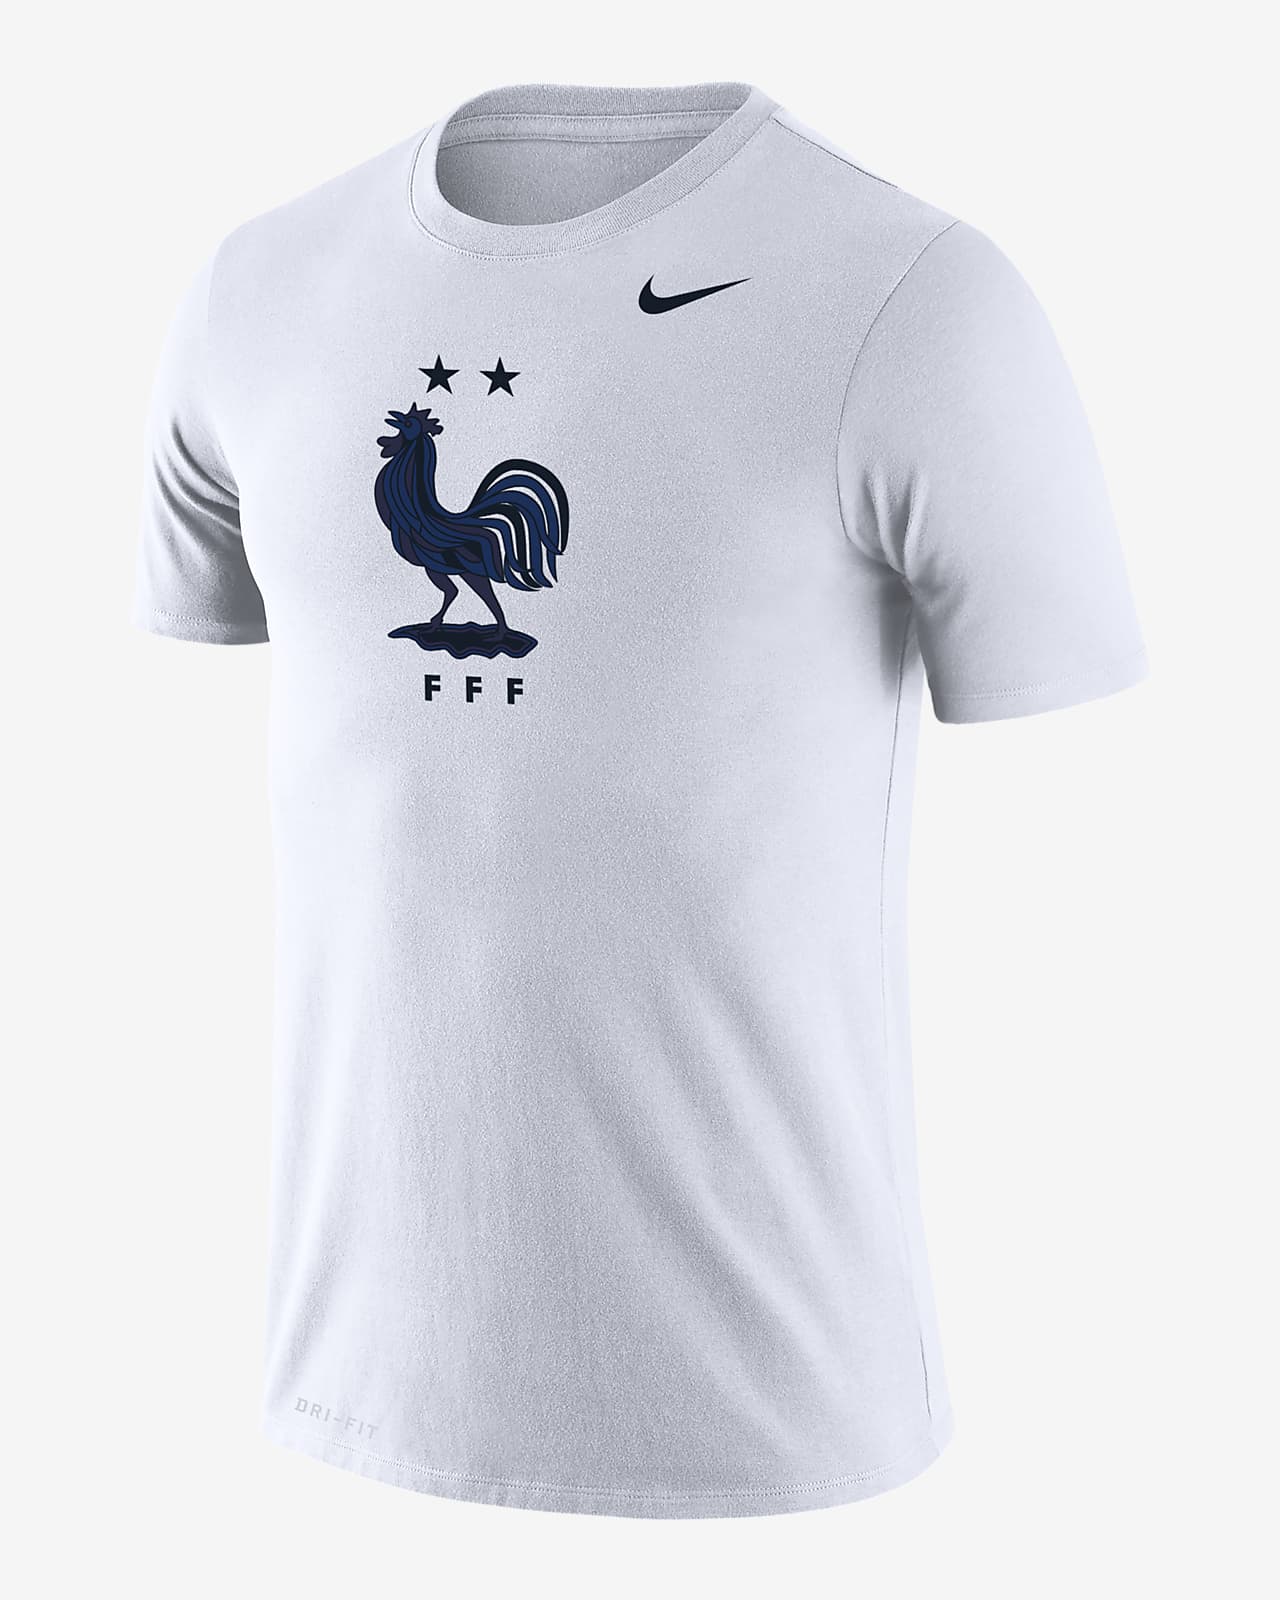 FFF Legend Men's Nike Dri-FIT T-Shirt